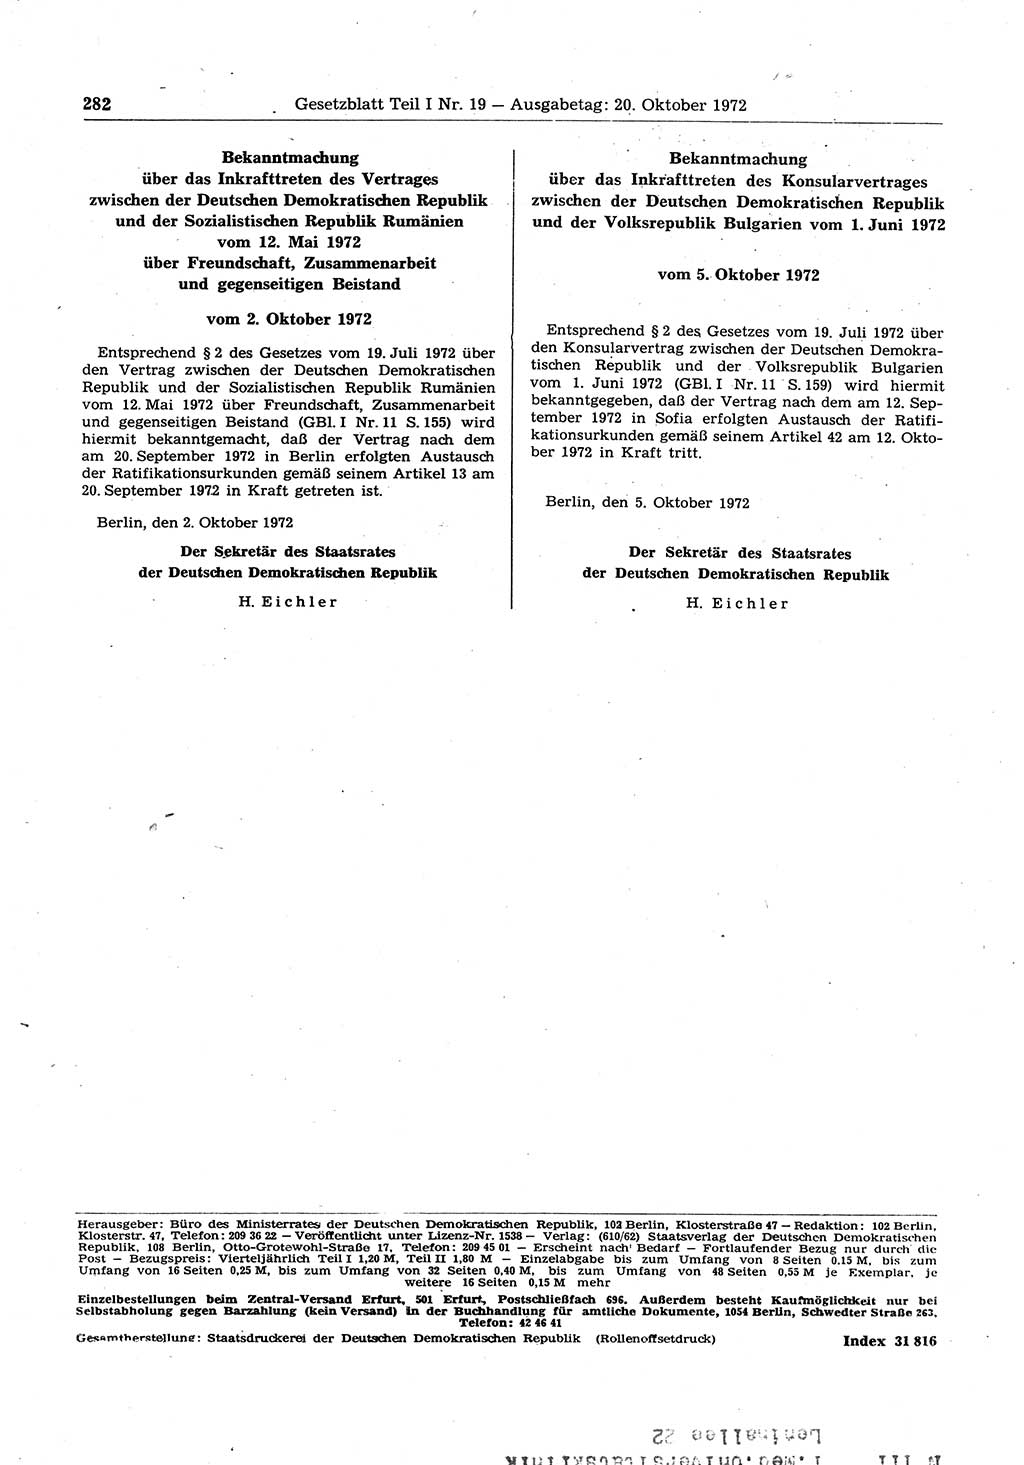 Gesetzblatt (GBl.) der Deutschen Demokratischen Republik (DDR) Teil Ⅰ 1972, Seite 282 (GBl. DDR Ⅰ 1972, S. 282)